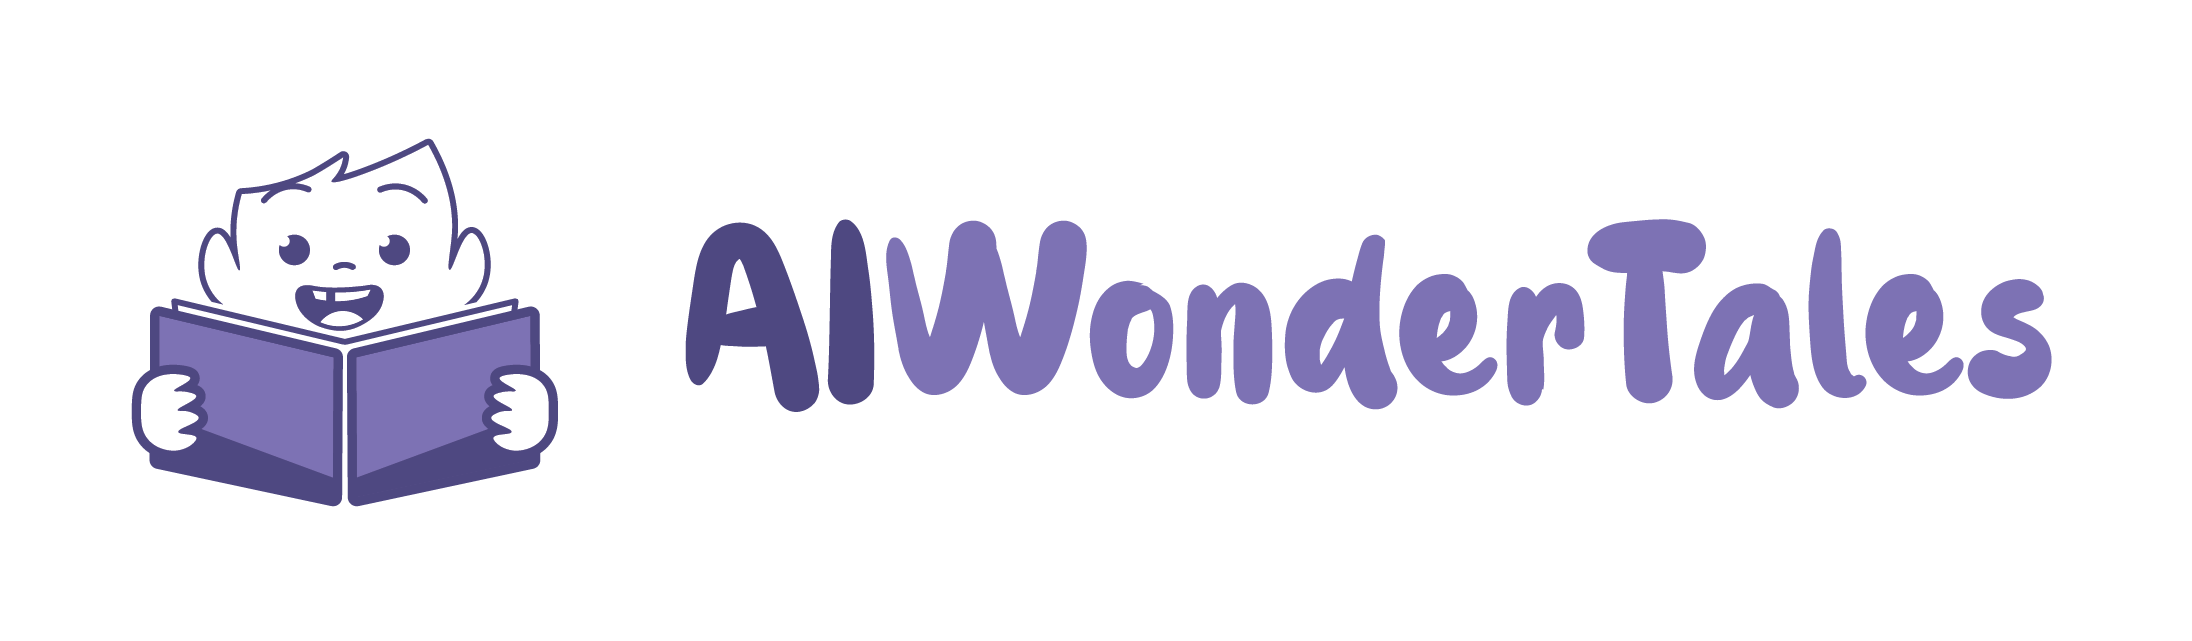 Aiwondertales Logo